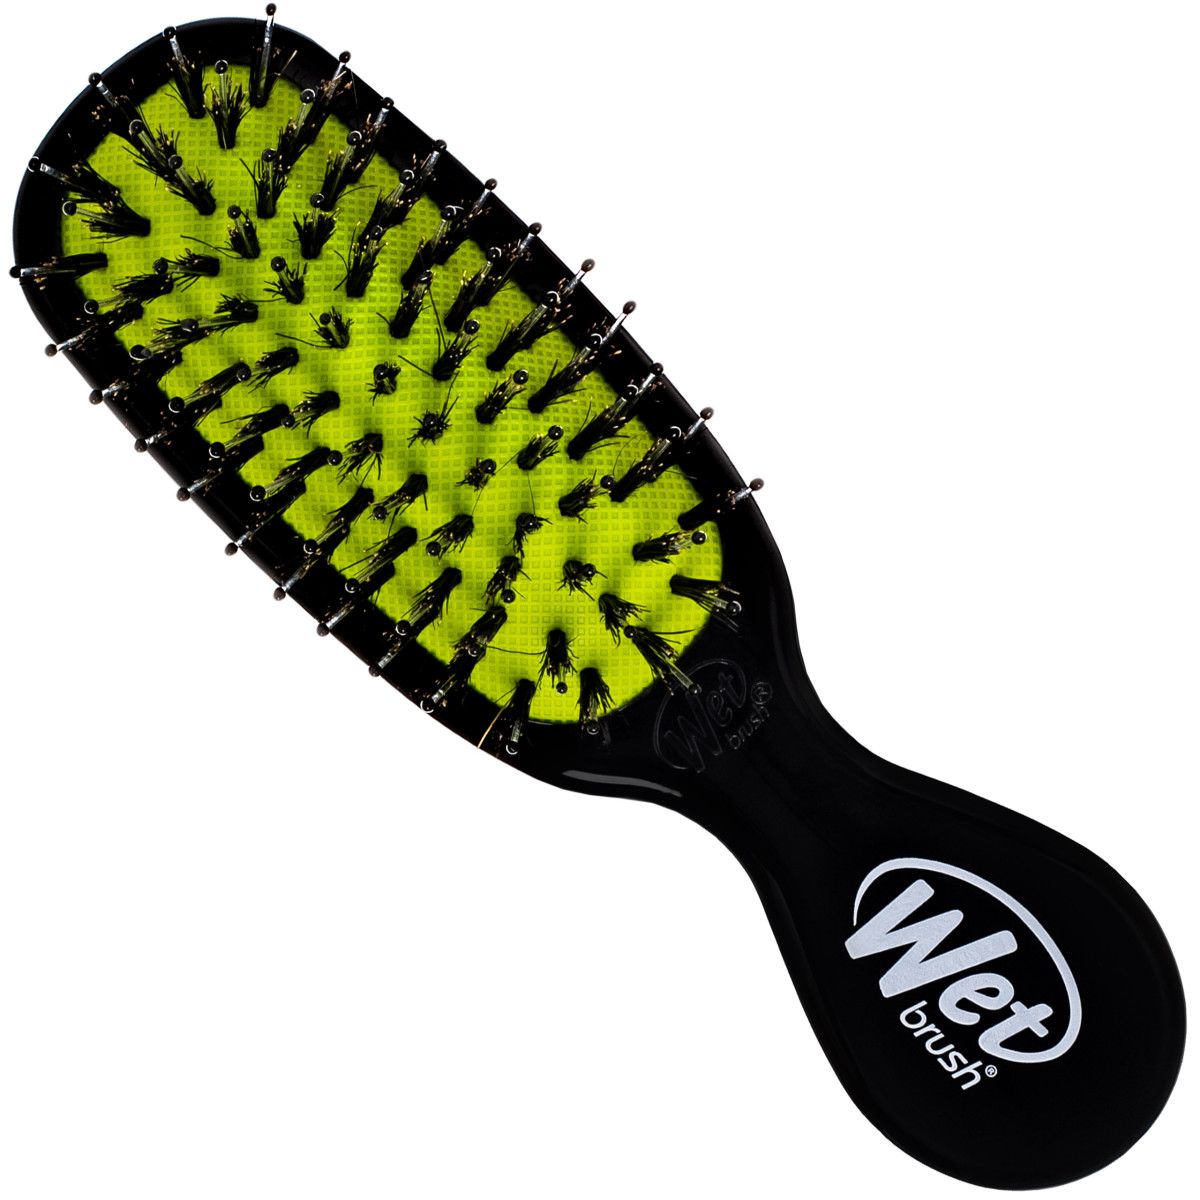 Wet Brush Mini Shine Enhancer Black - mała szczotka z włosiem dzika